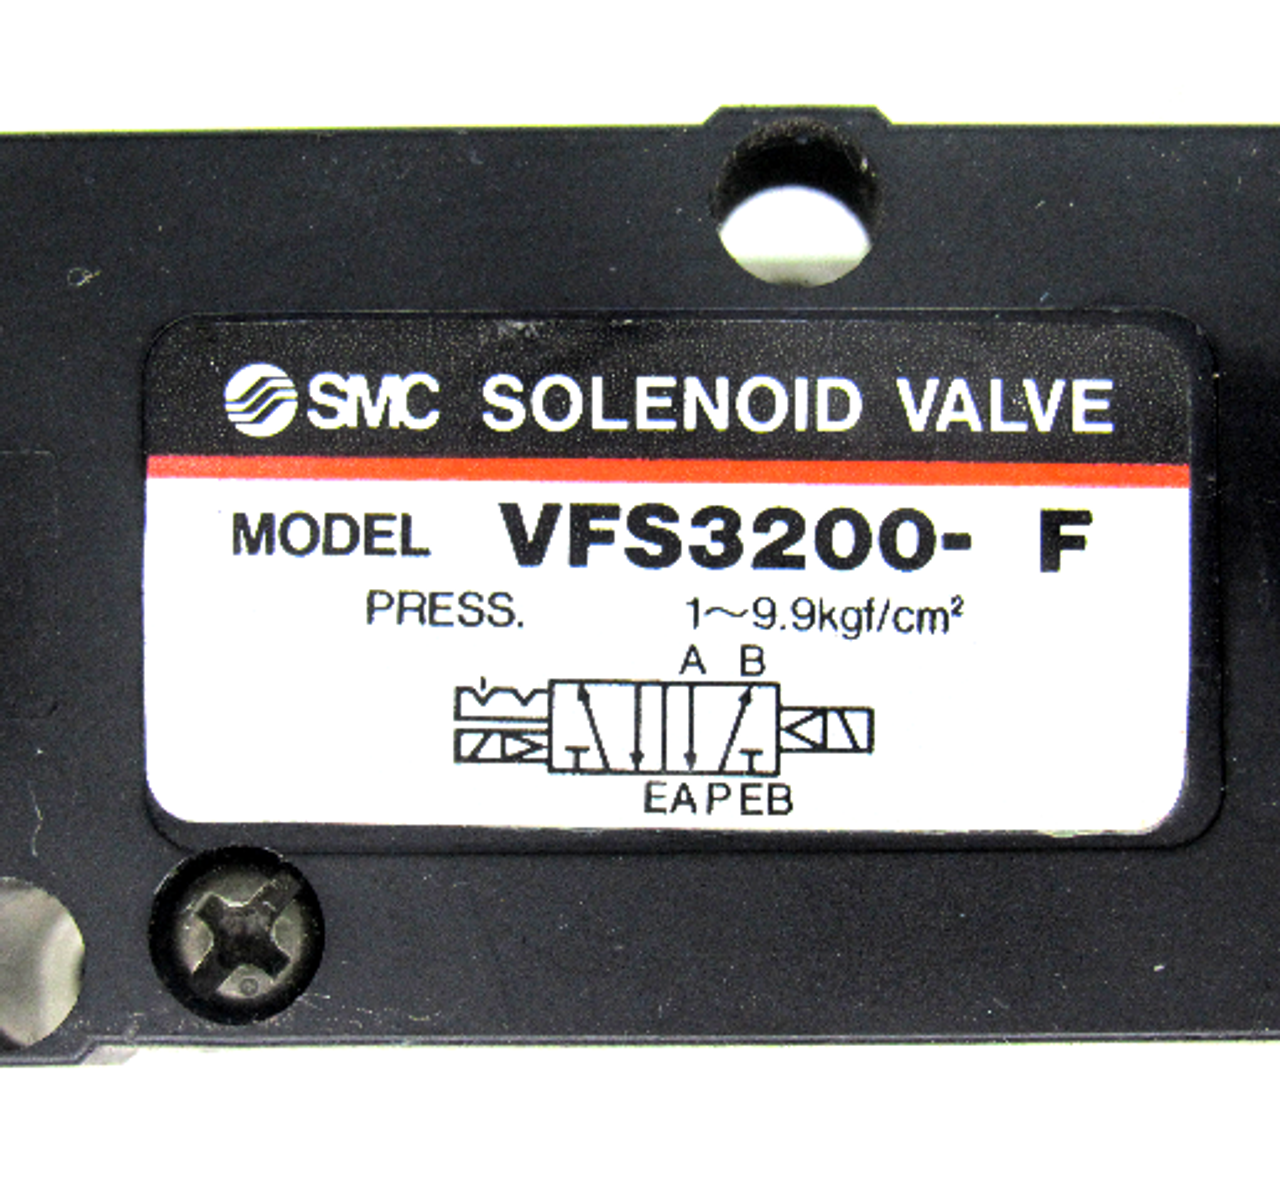 SMC VFS3200-F Solenoid Valve, 9.9kgf/cm² Maximum Operating Pressure